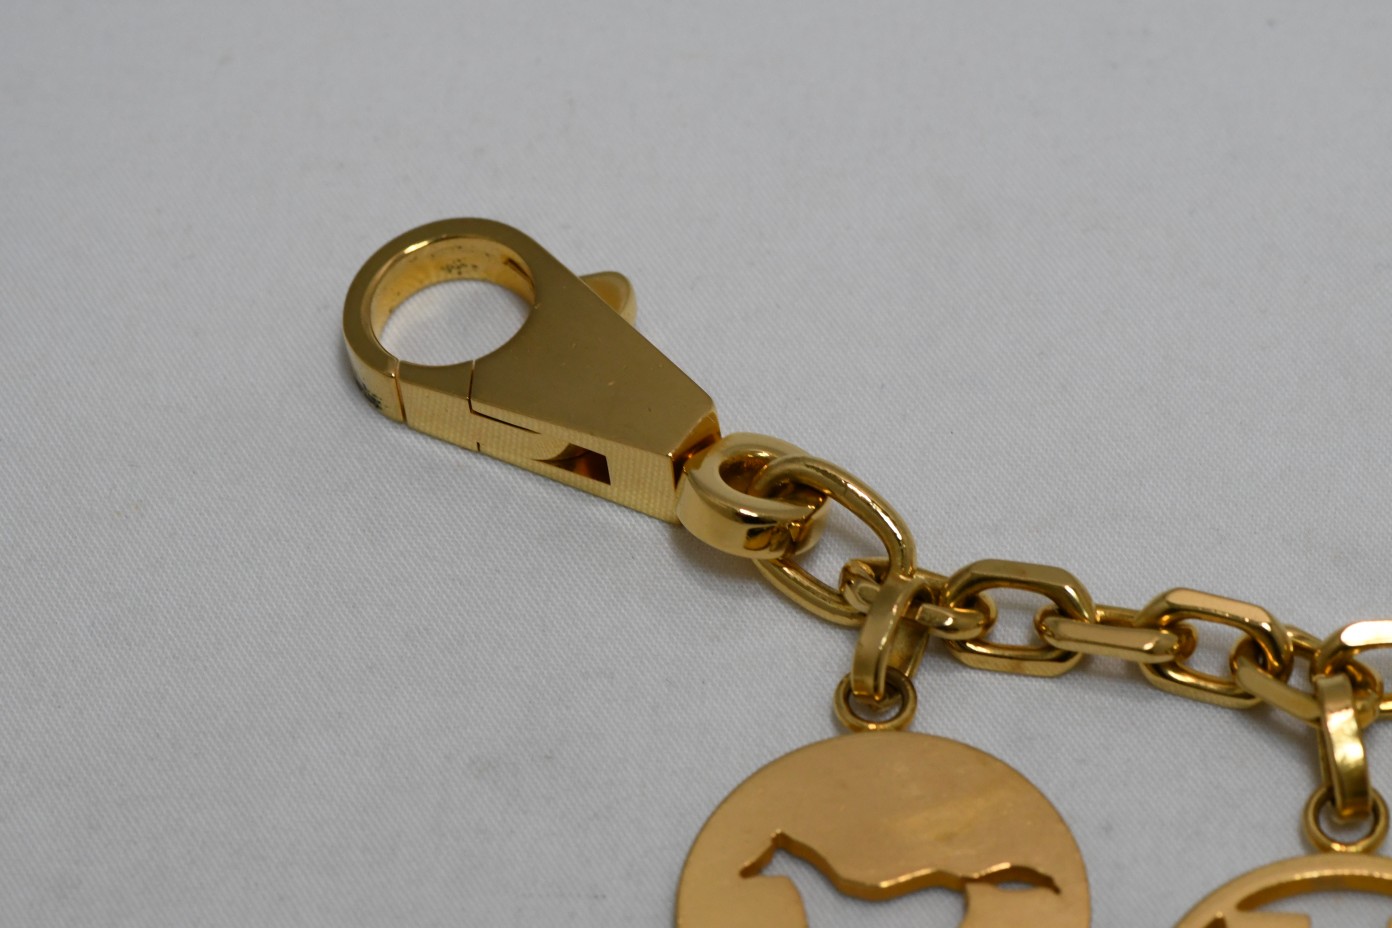 Hermes Gold Breloque Olga Bag Charm Amulette Cadena Berloque 0229